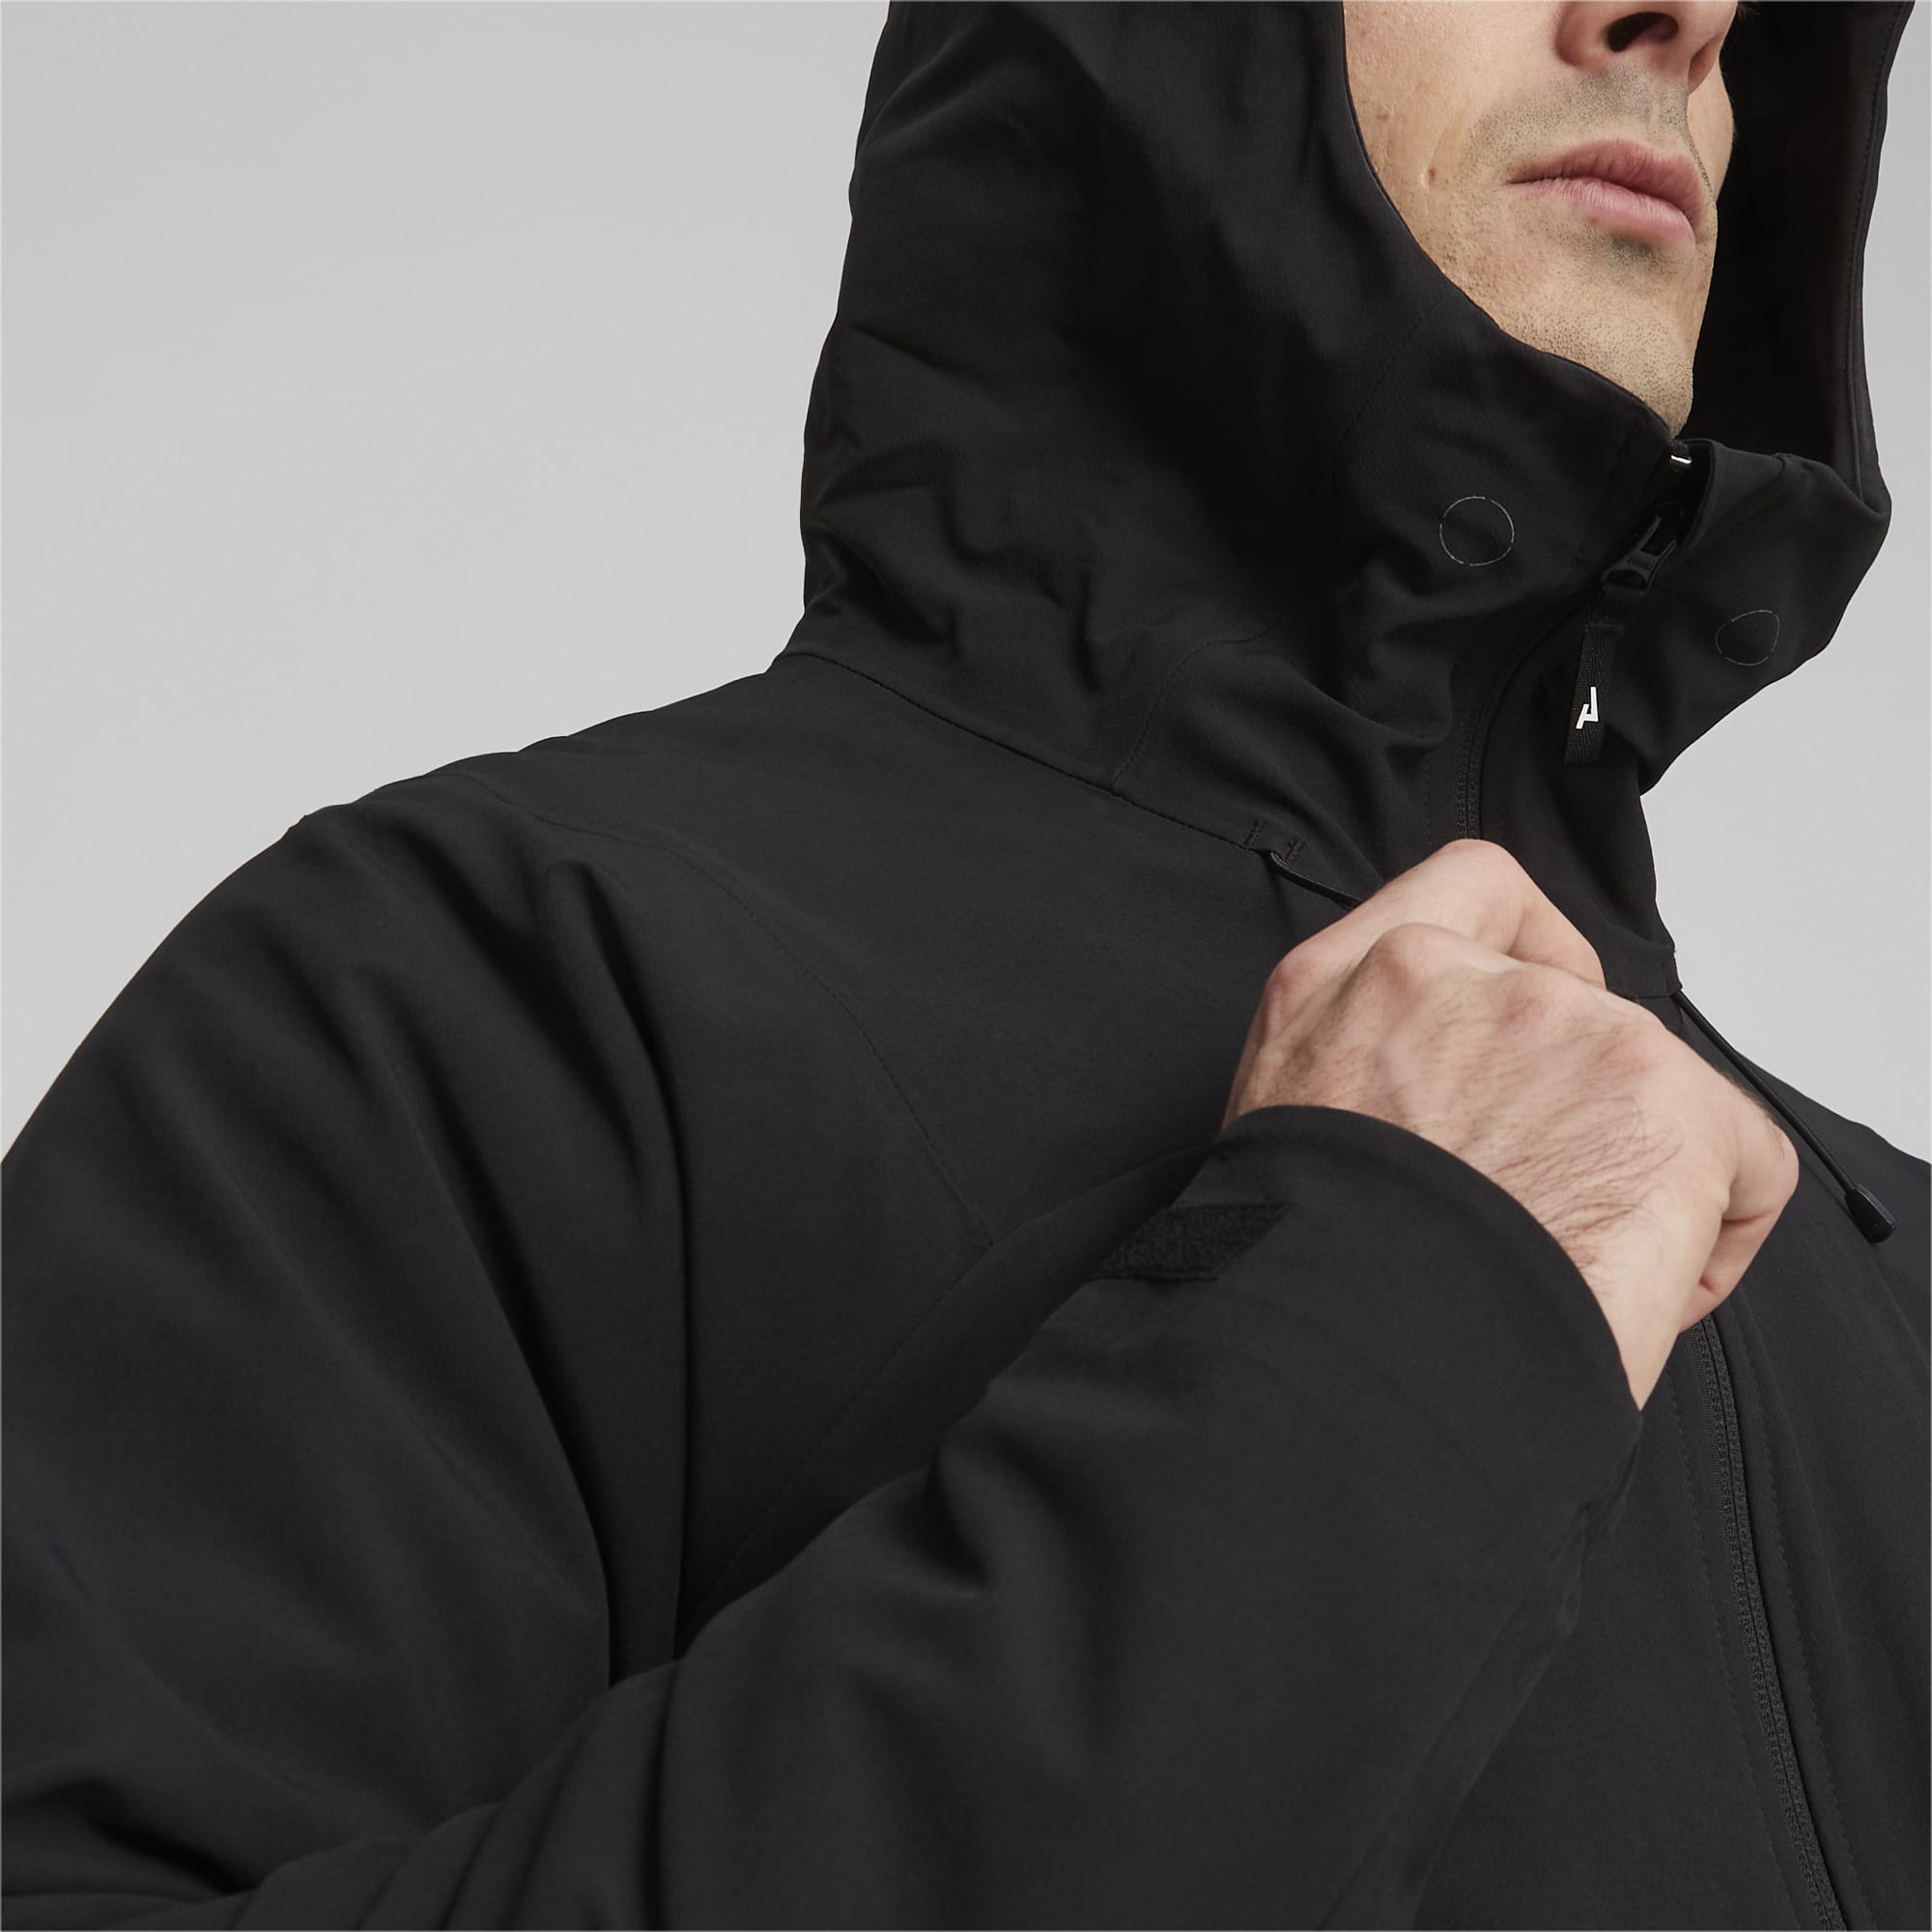 PUMA Seasons Men's Softshell Running Jacket, Black